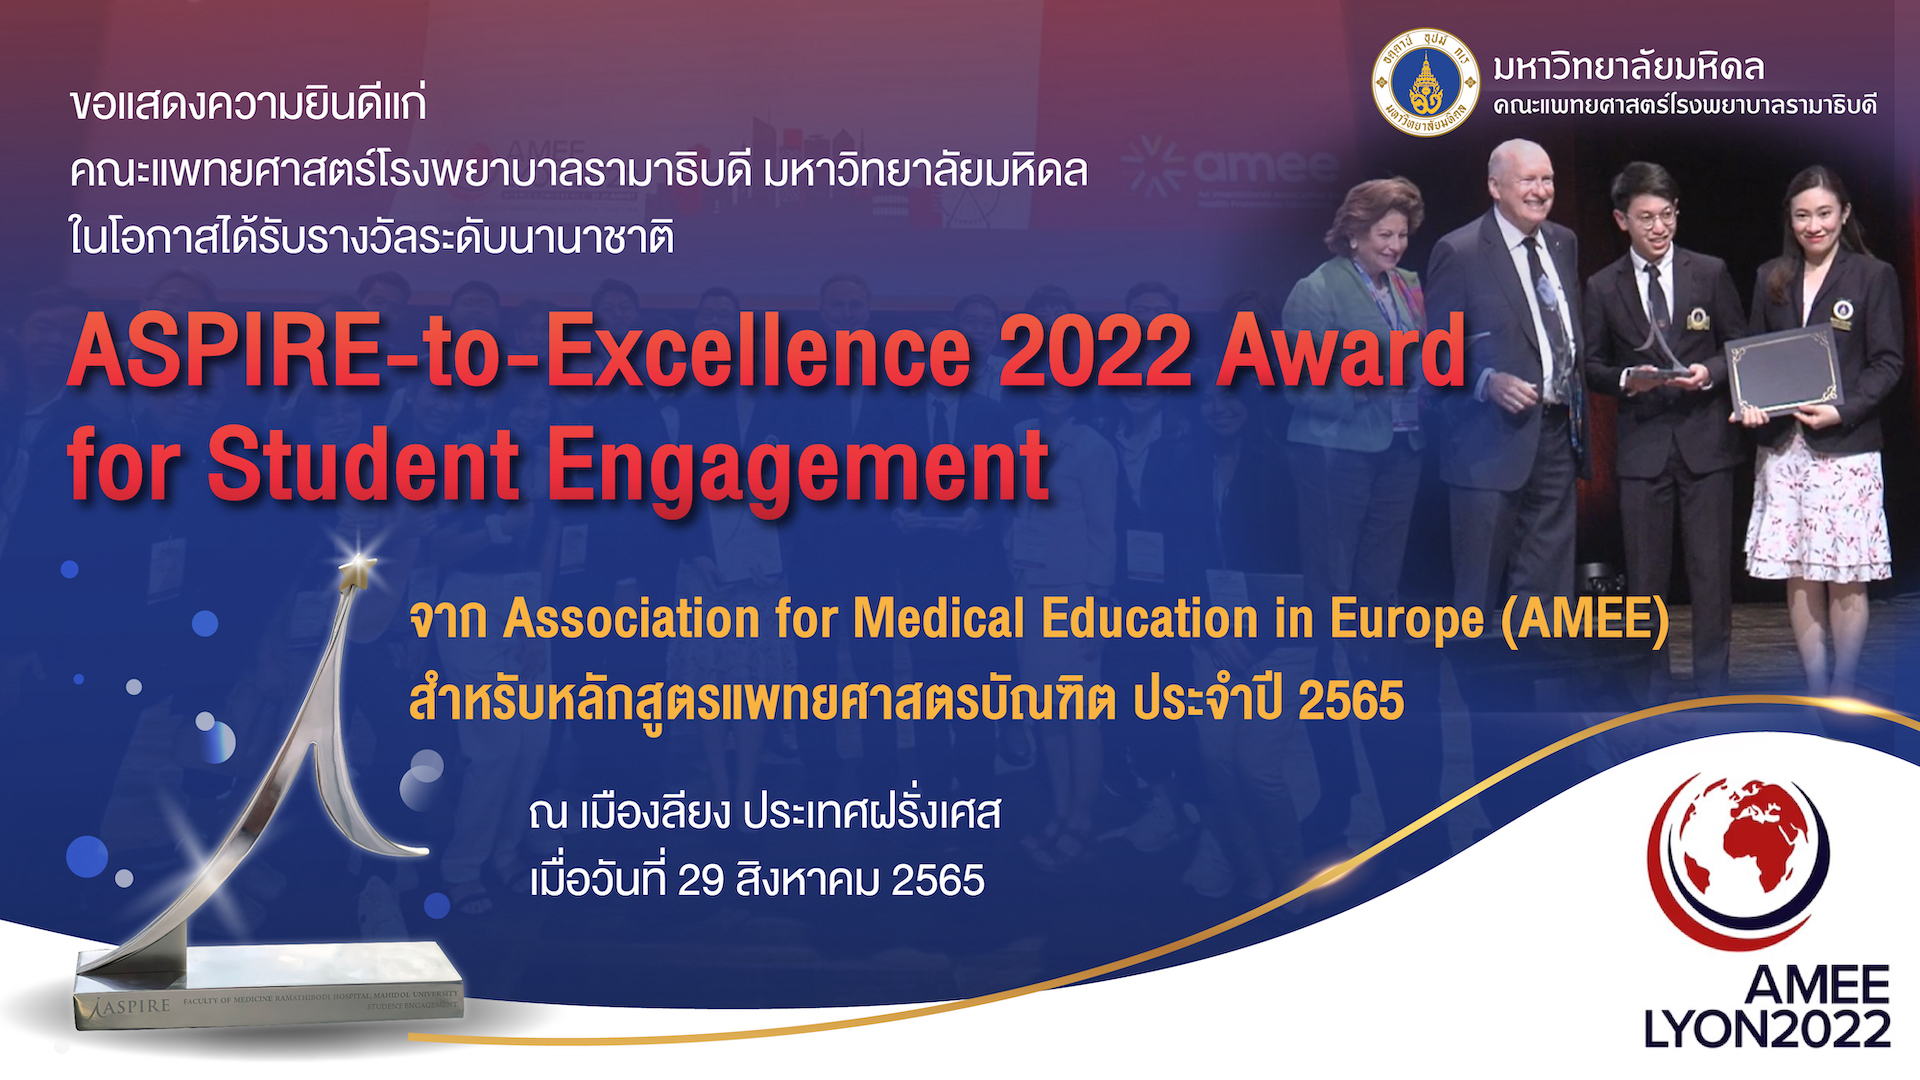 ขอแสดงความยินดีแก่ คณะแพทยศาสตร์โรงพยาบาลรามาธิบดี มหาวิทยาลัยมหิดล  ในโอกาสได้รับรางวัลระดับนานาชาติ ASPIRE-to-Excellence 2022 Award for Student Engagement จาก Association for Medical Education in Europe (AMEE) สำหรับหลักสูตรแพทยศาสตรบัณฑิต ประจำปี 2565